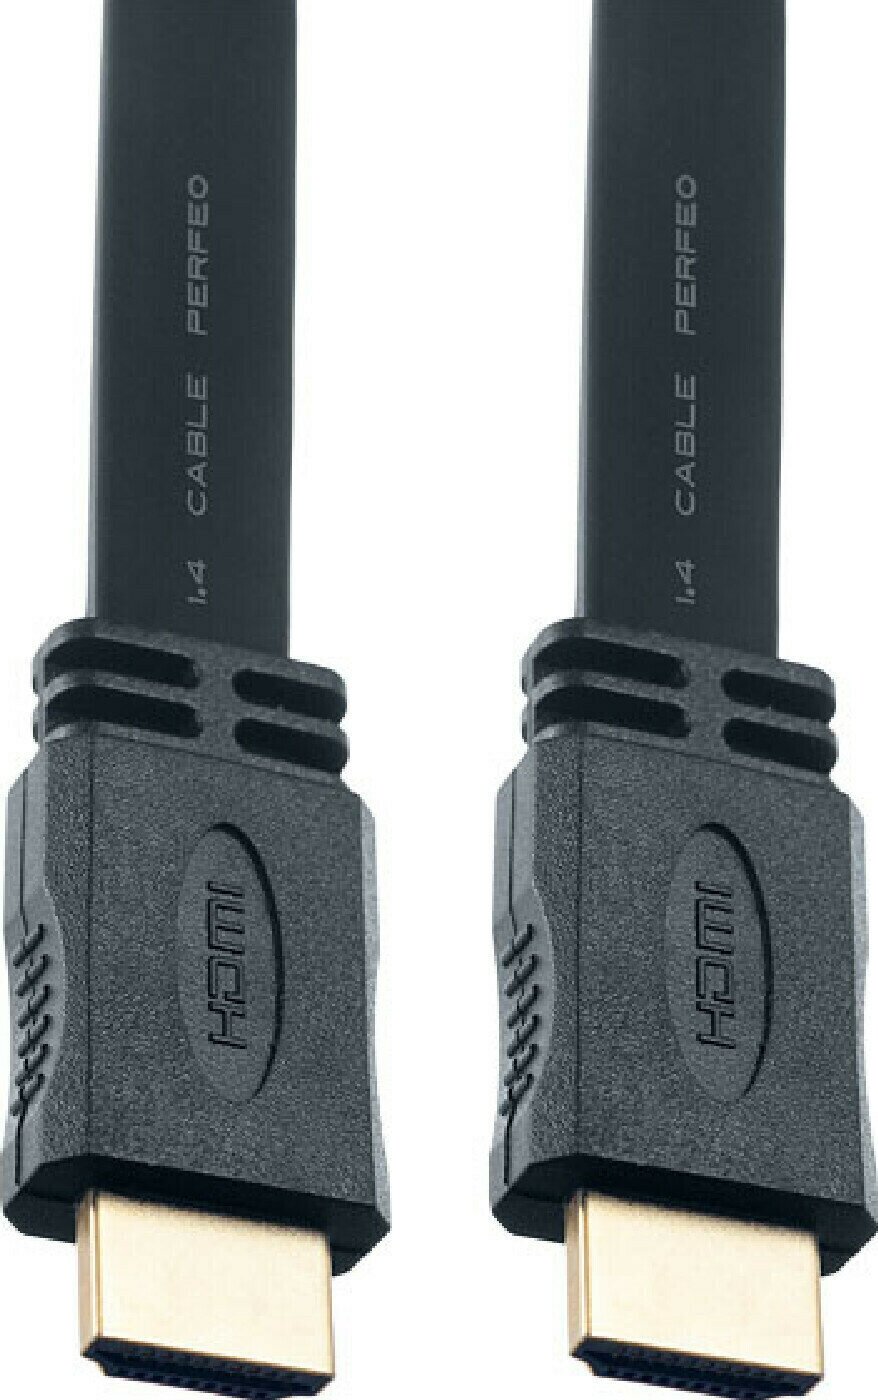 Кабель-переходник (адаптер) PERFEO Кабель HDMI A вилка - HDMI A вилка, плоский, 1.4, длина 1 метр. (H1301)